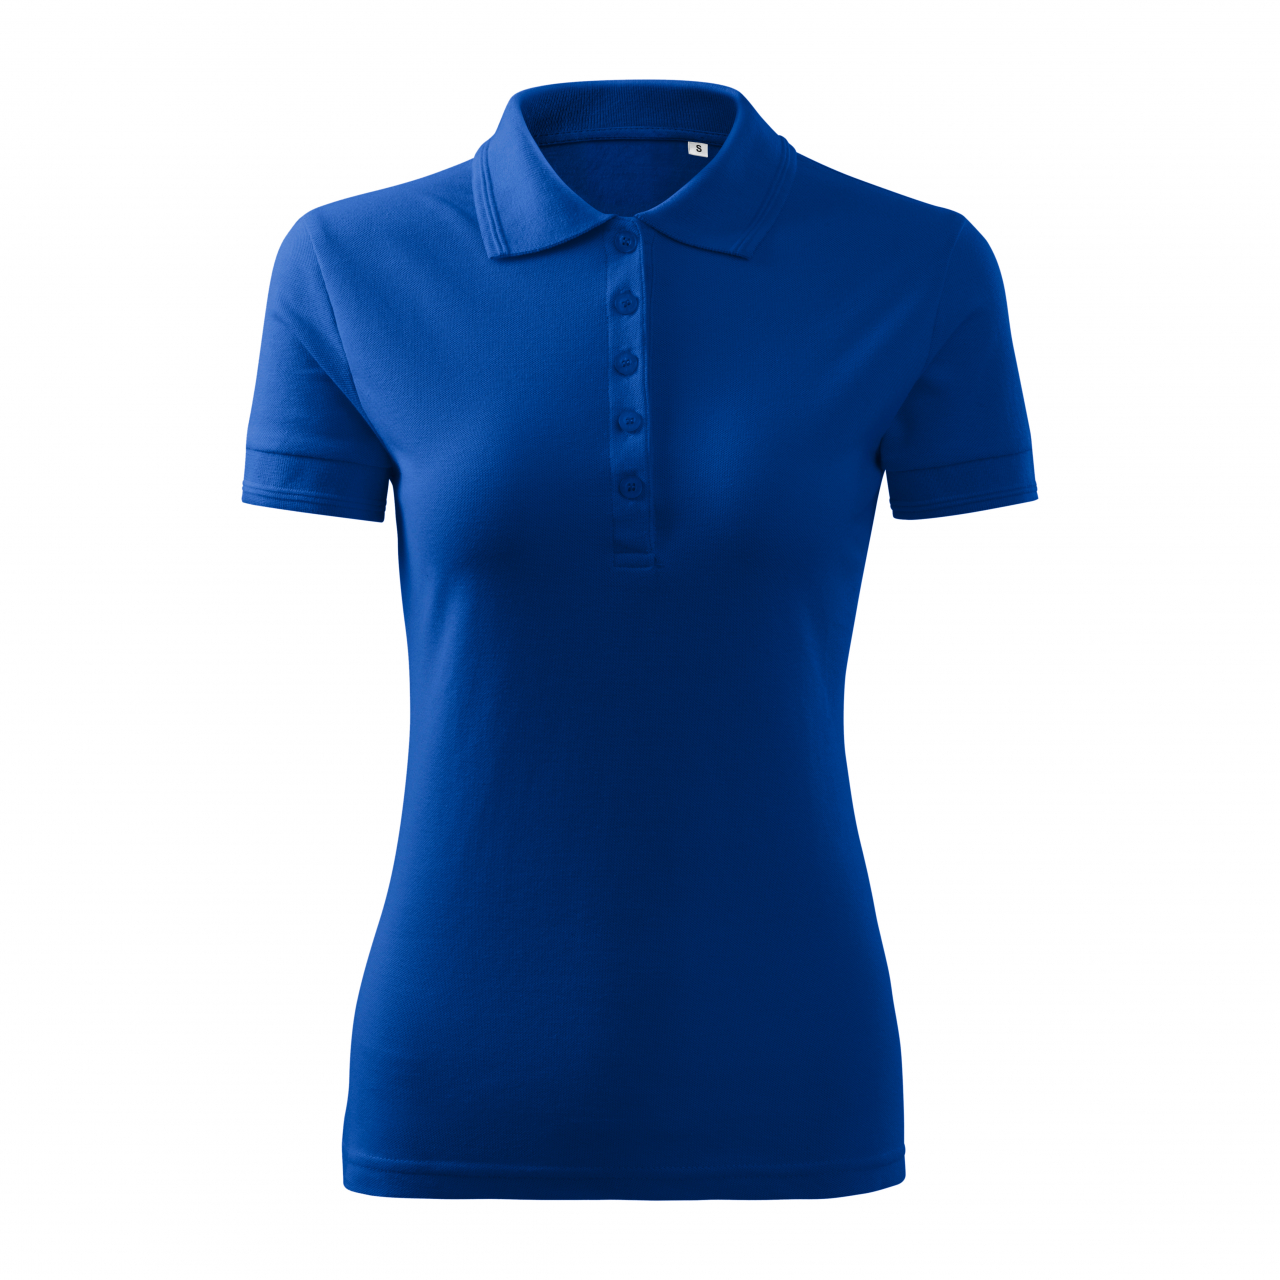 Polokošile dámská Malfini Pique Polo Free - modrá, XL